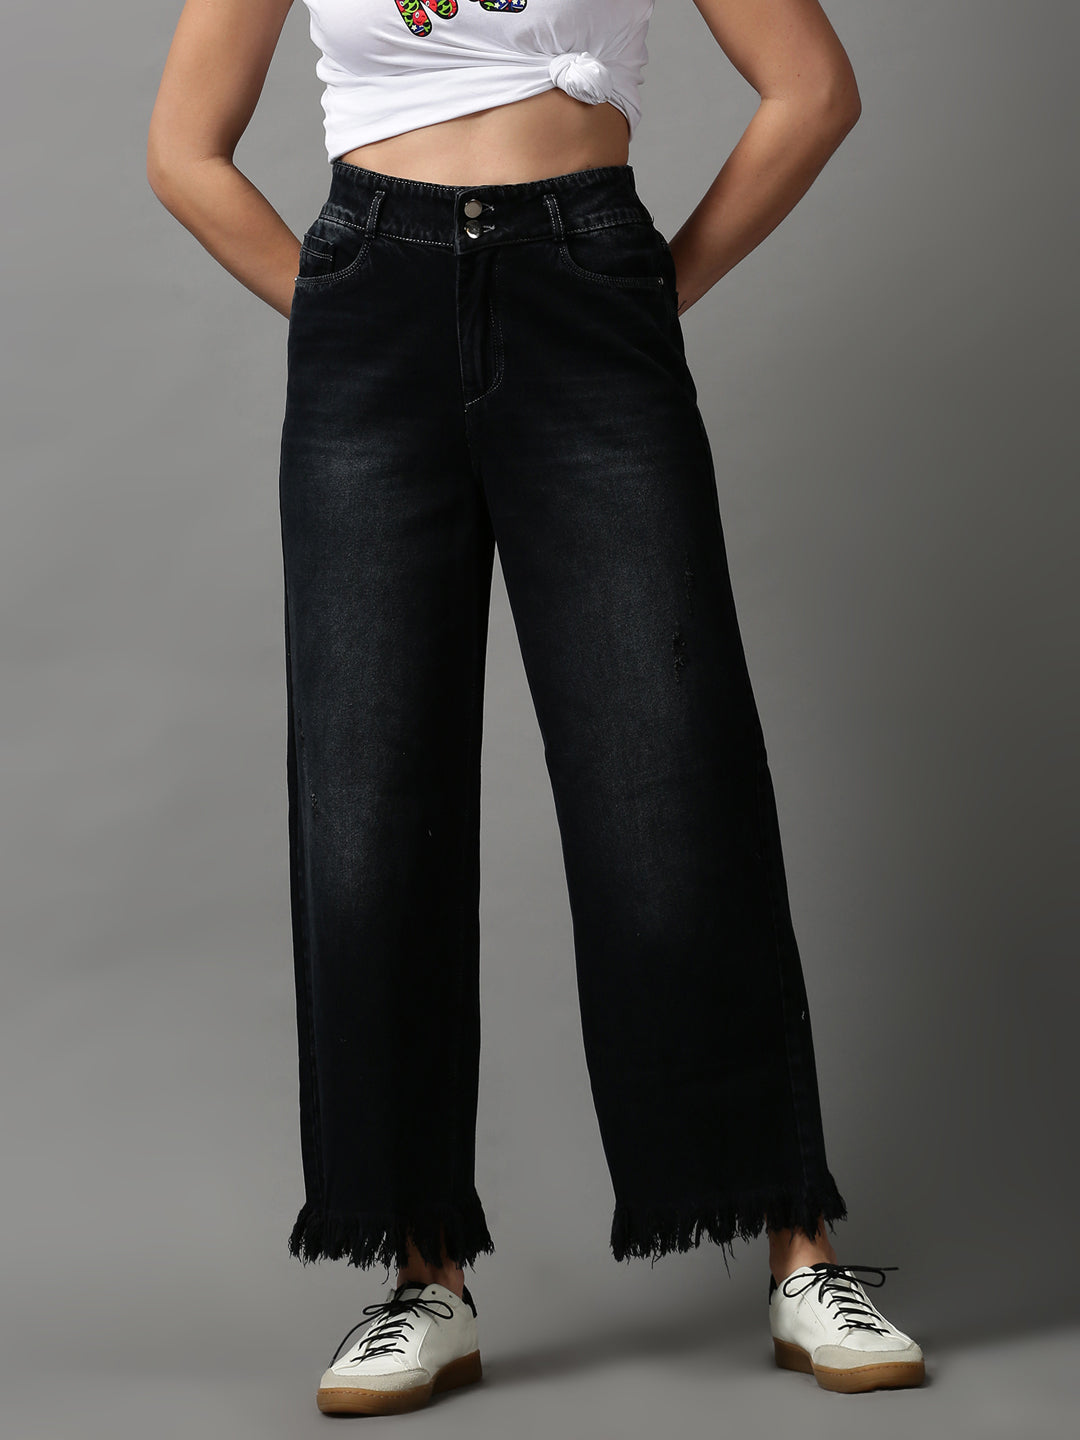 Women's Black Solid Wide Leg Denim Jeans